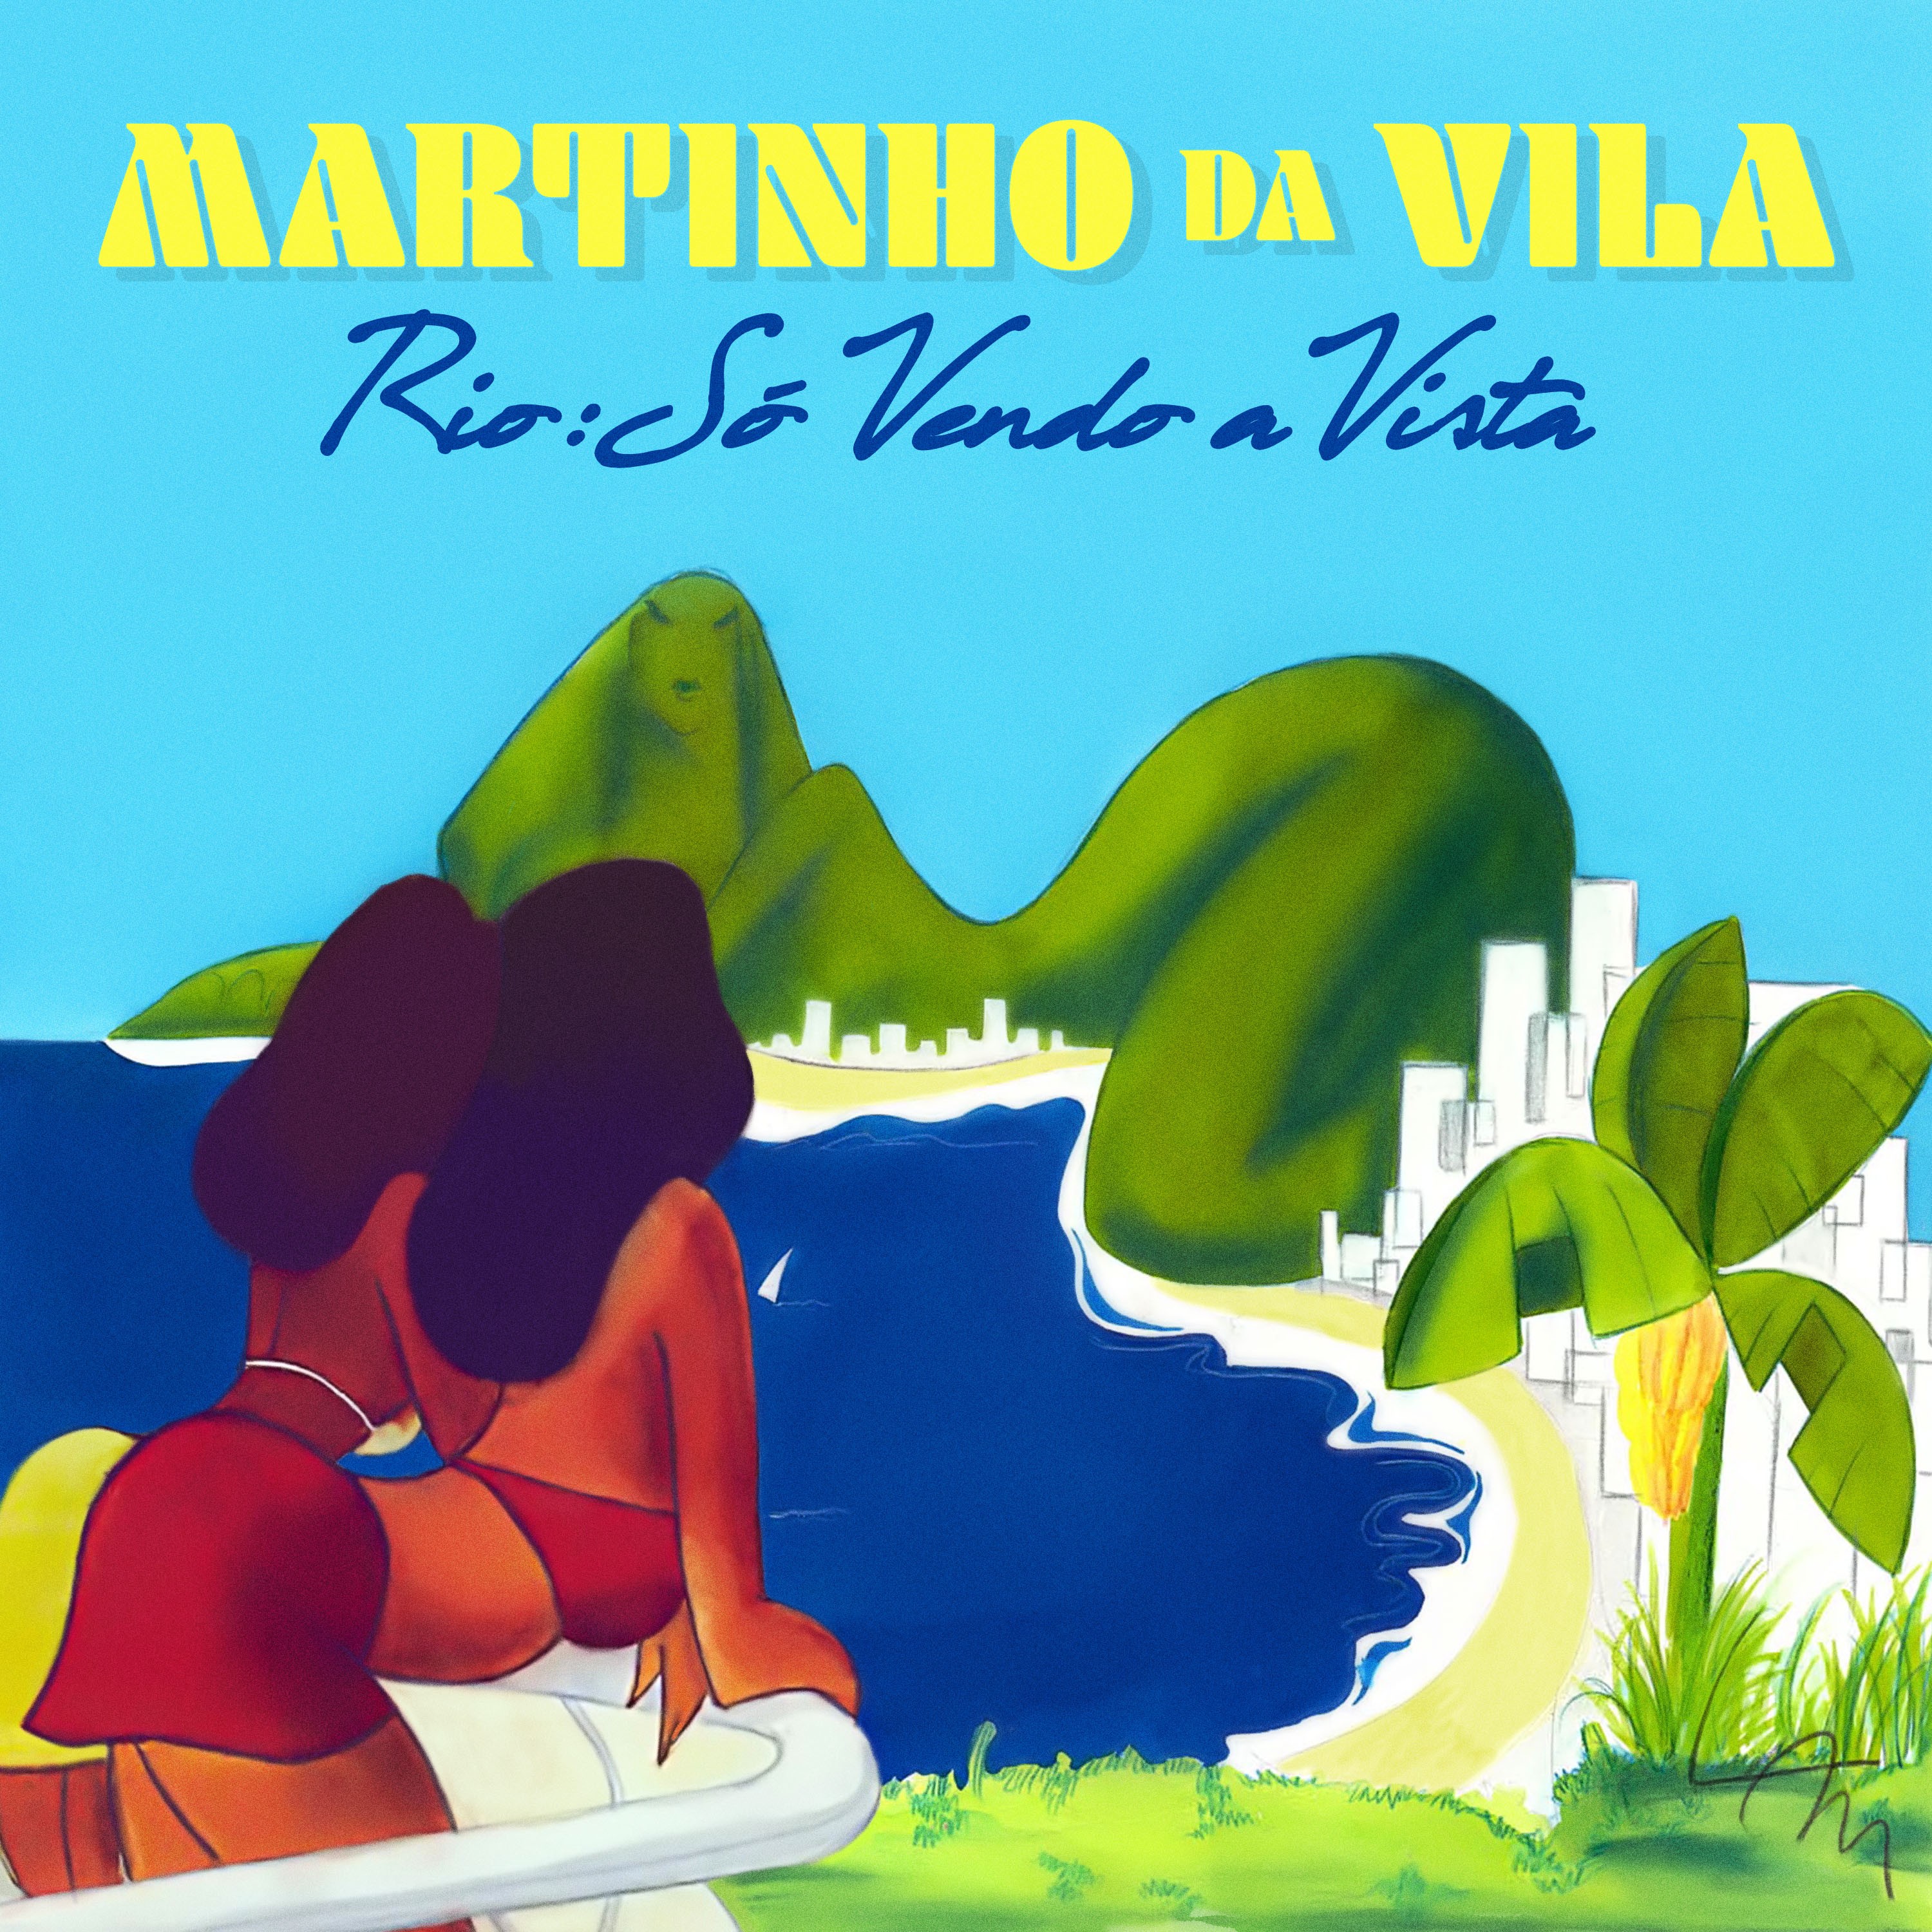 Martinho da Vila lança novo álbum, Rio Só Vendo a Vista (Foto: Divulgação)